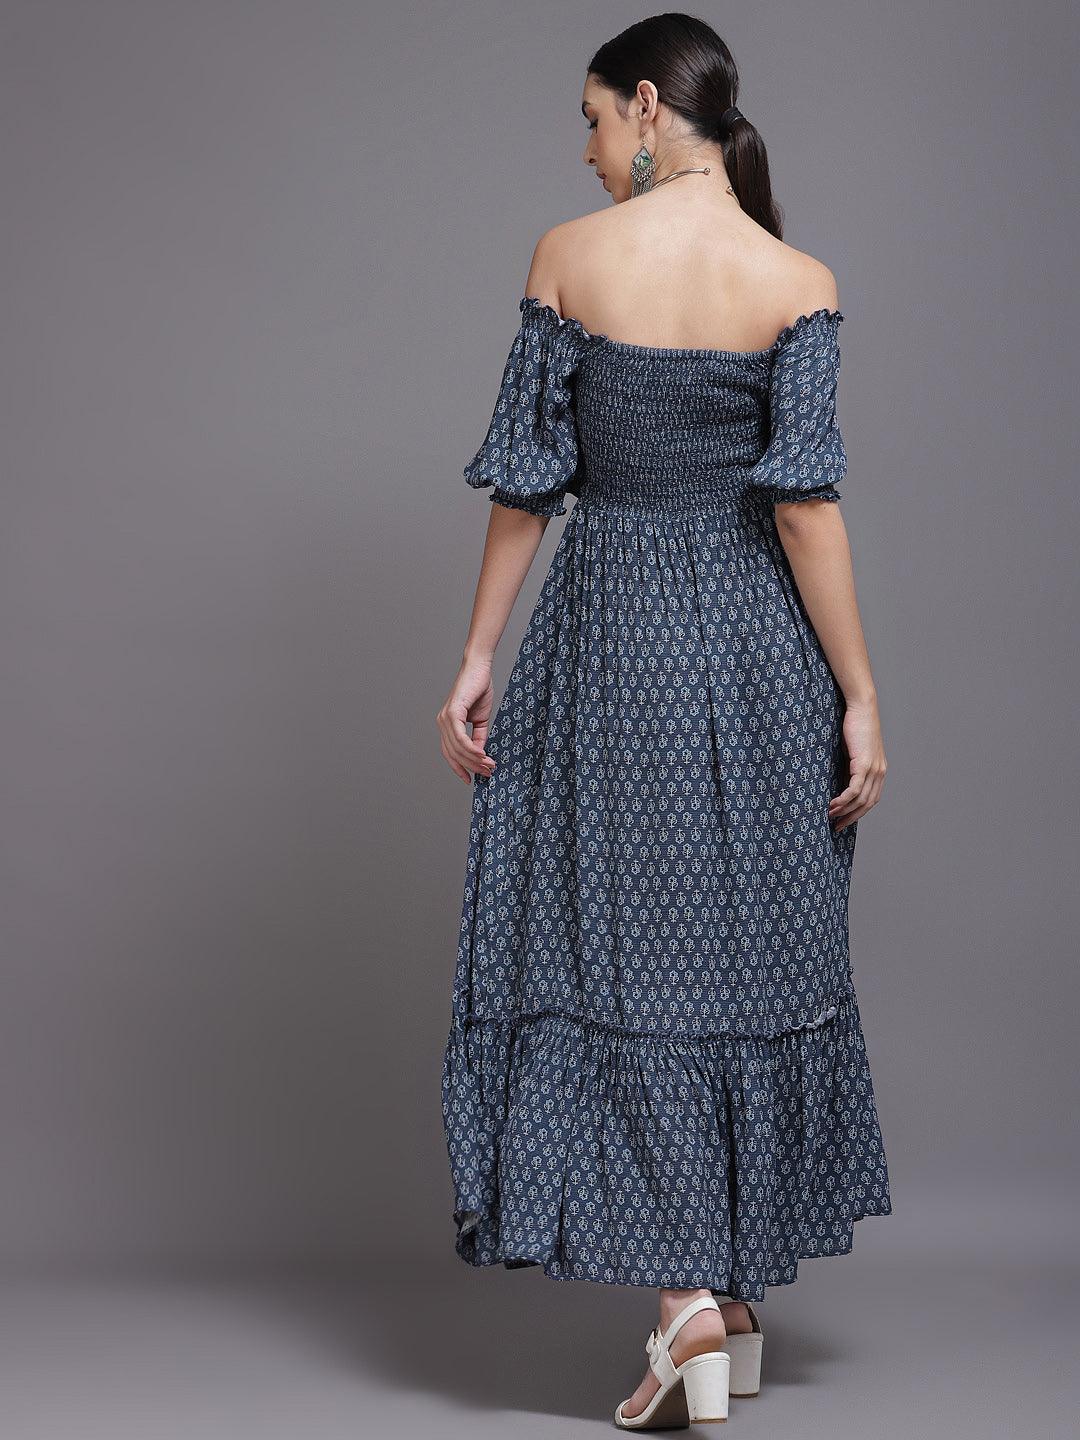 Navy Blue Printed Georgette Dress - Libas